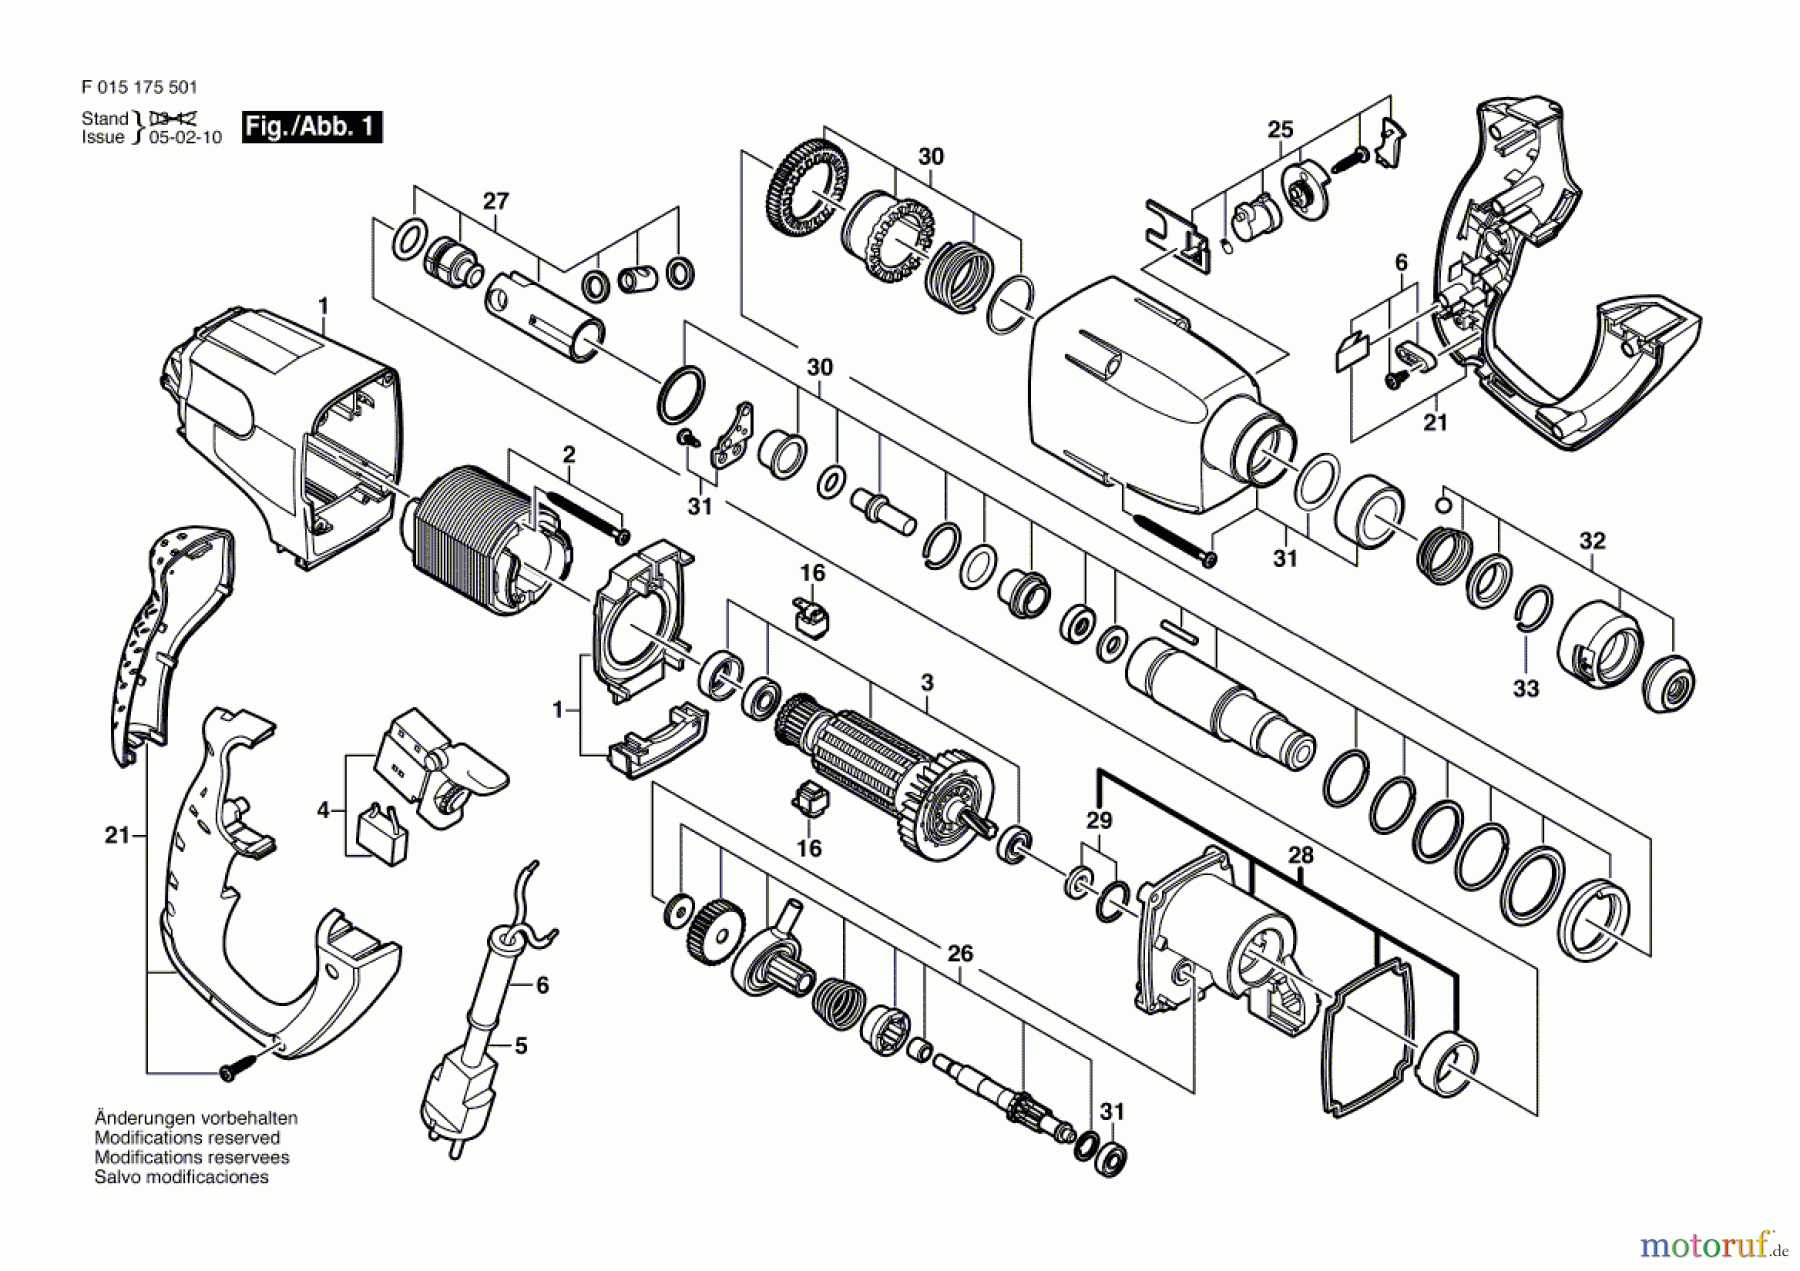  Bosch Werkzeug Bohrhammer 1755 Seite 1